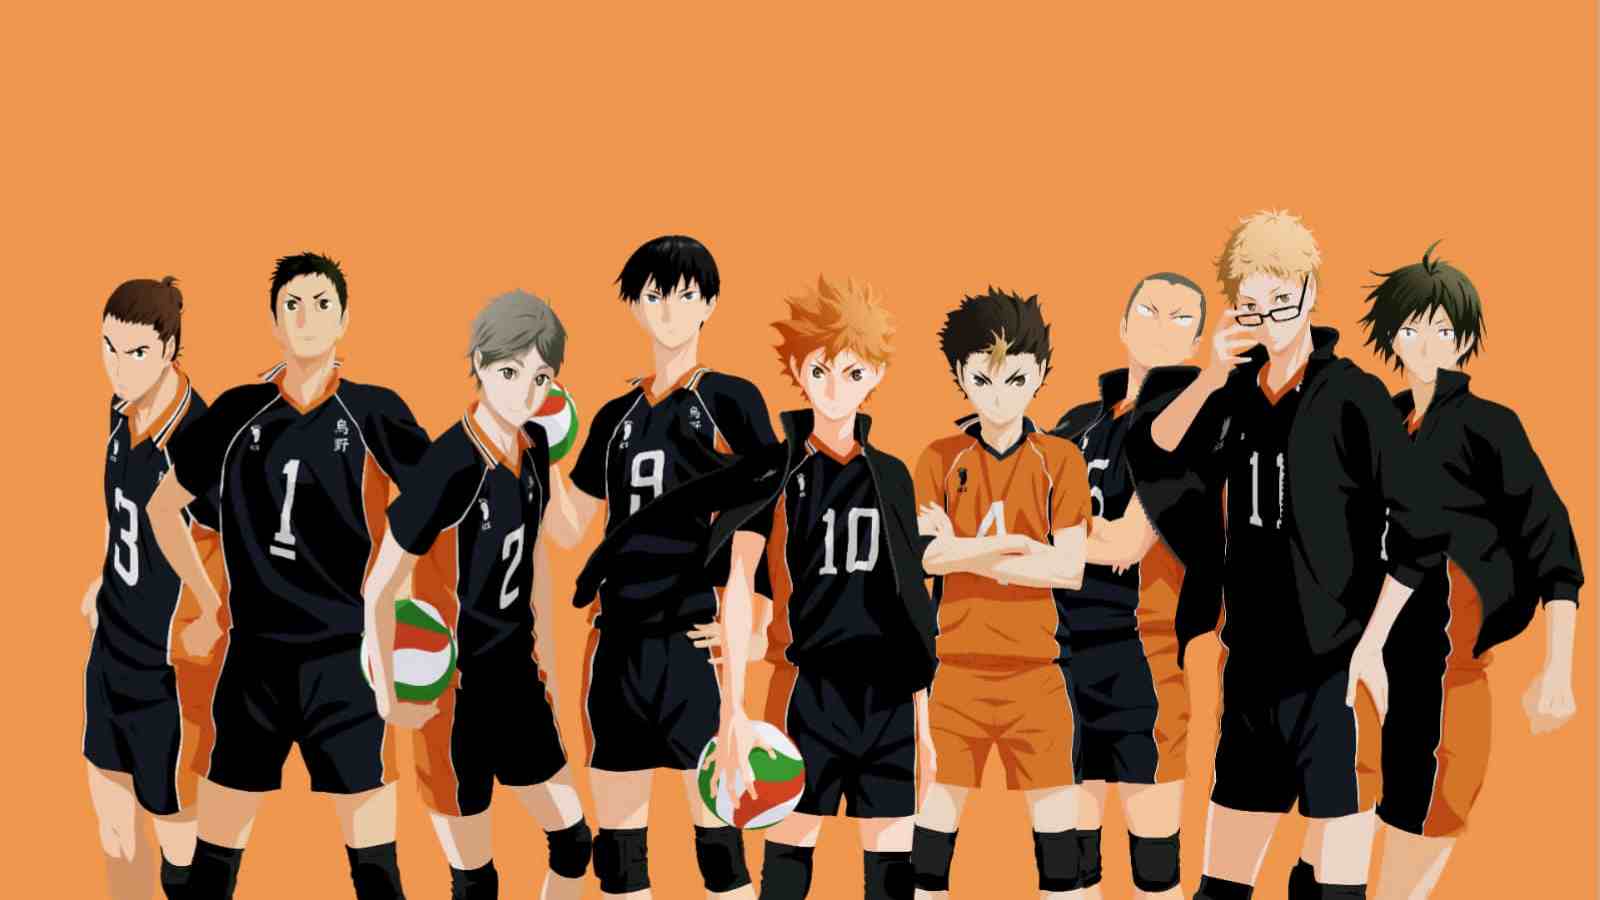 Haikyu !!Clube de Voleibol da High School de Shoyo Hinata Karasuno